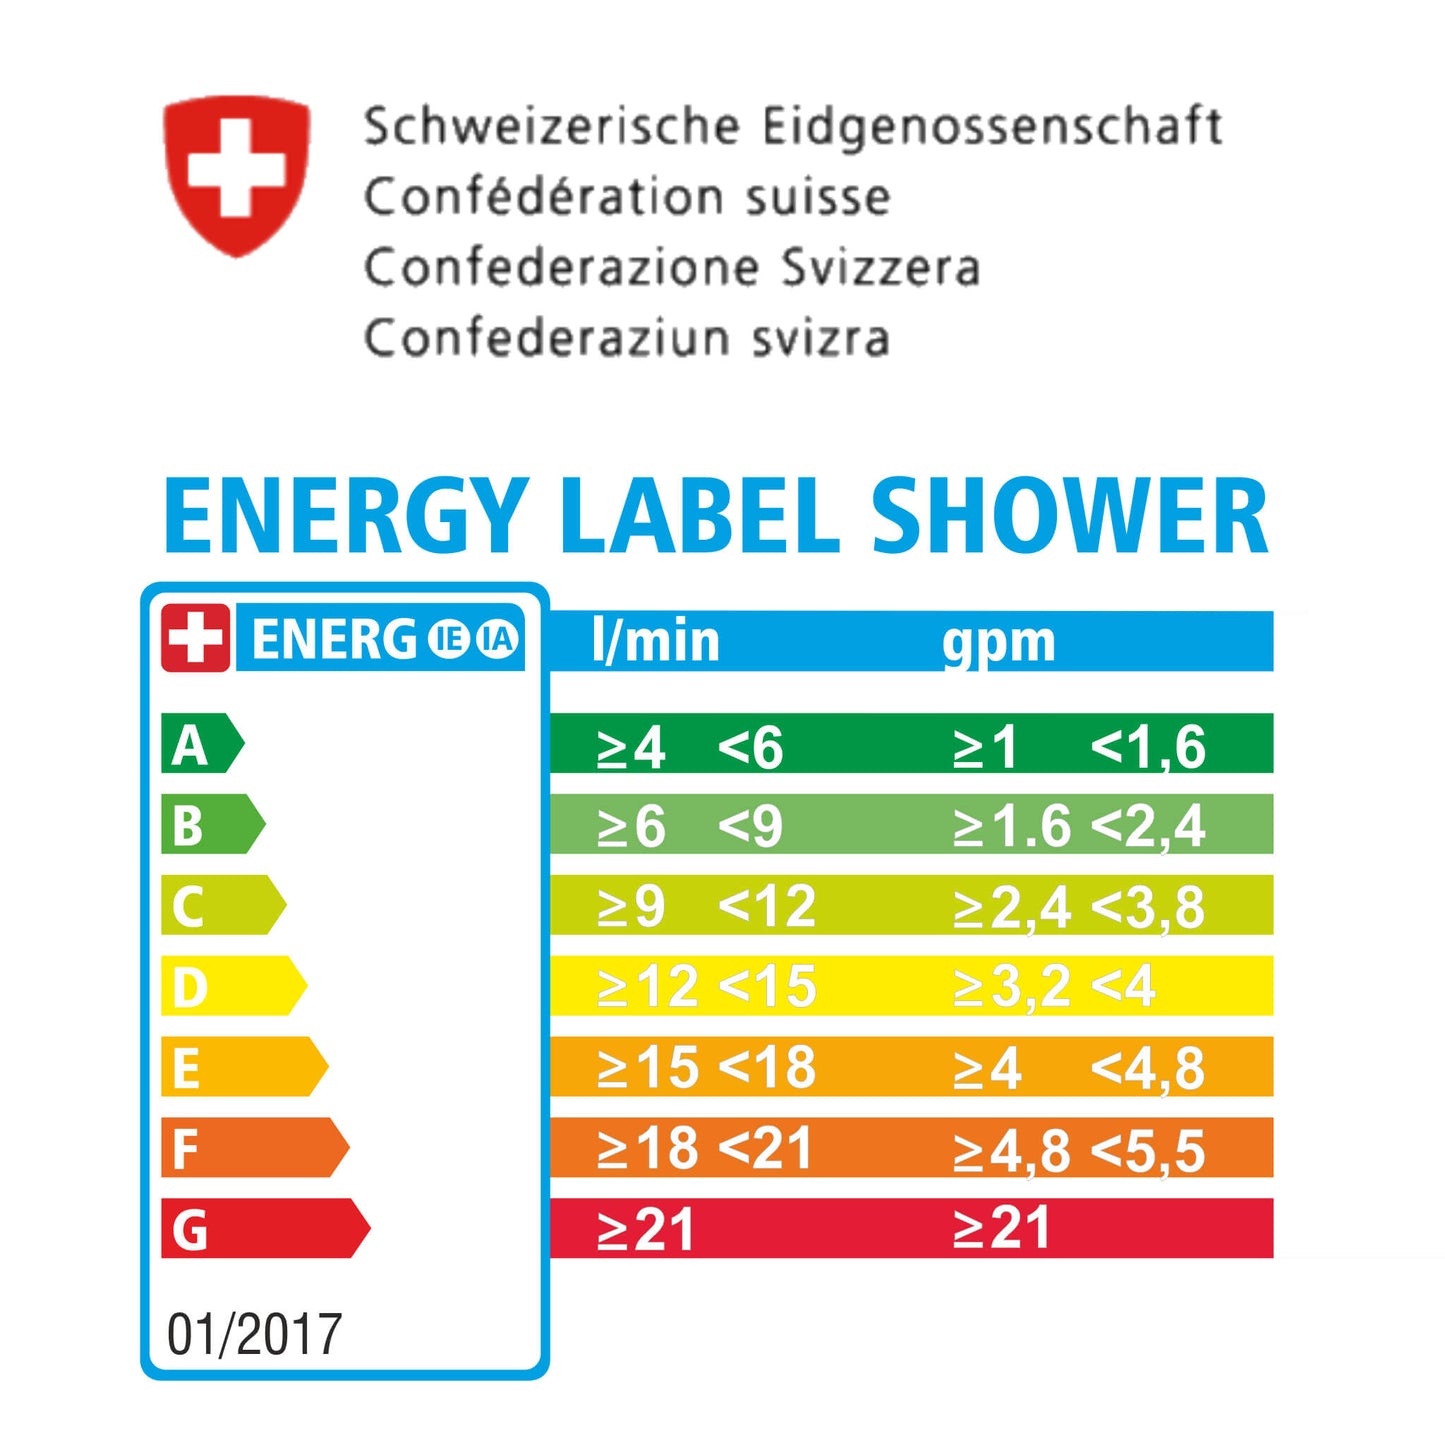 Label énergétique de l'Office fédéral de l'énergie, présentation sous forme de tableau des classes énergétiques A-G et .